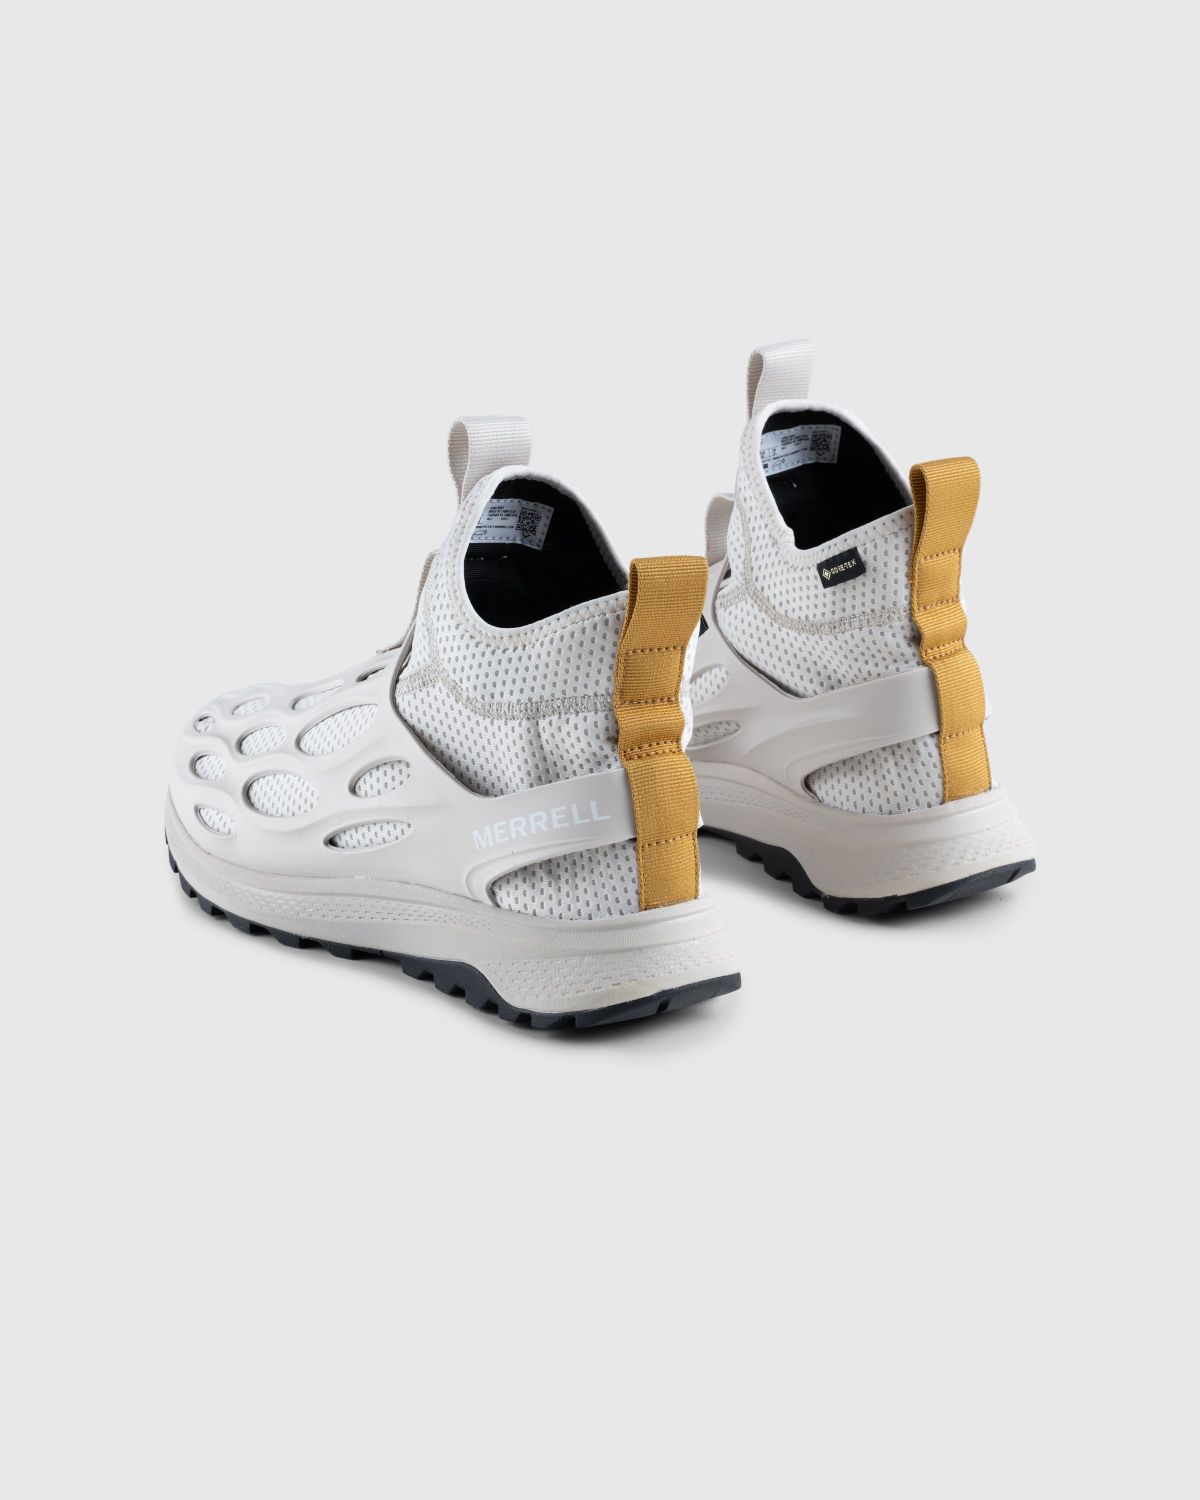 Merrell – Hydro Runner Mid GORE-TEX Moonbeam - Sneakers - Yellow - Image 4